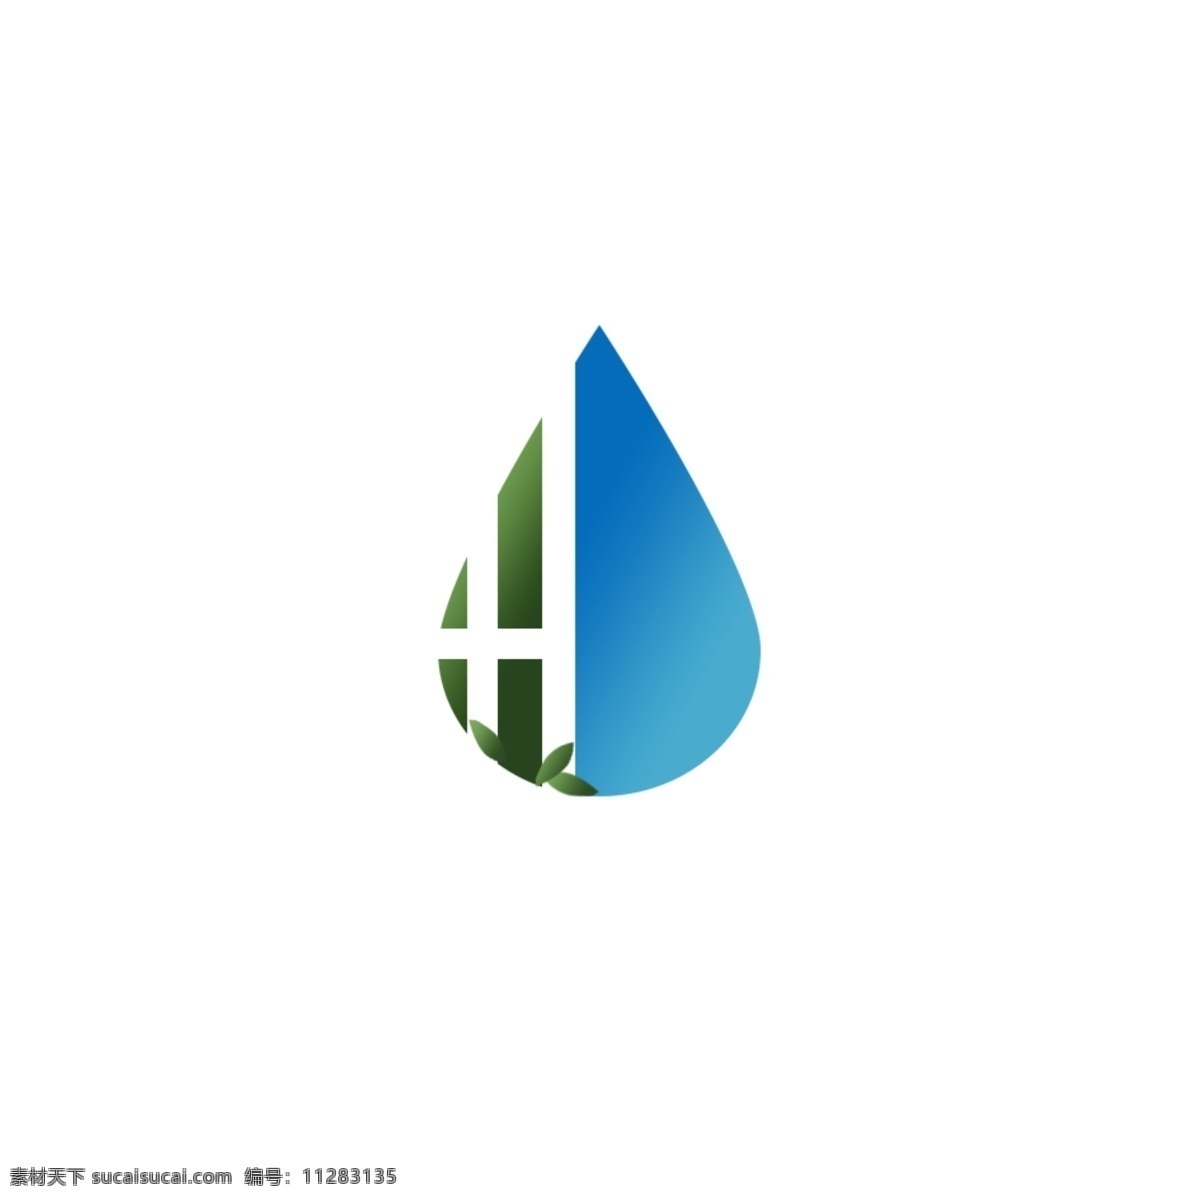 字母 h 环保 logo 水滴 树木 绿色 蓝色 环保logo 蓝色logo 绿色logo 环保水滴 环保水滴树木 绿色环保 logo设计